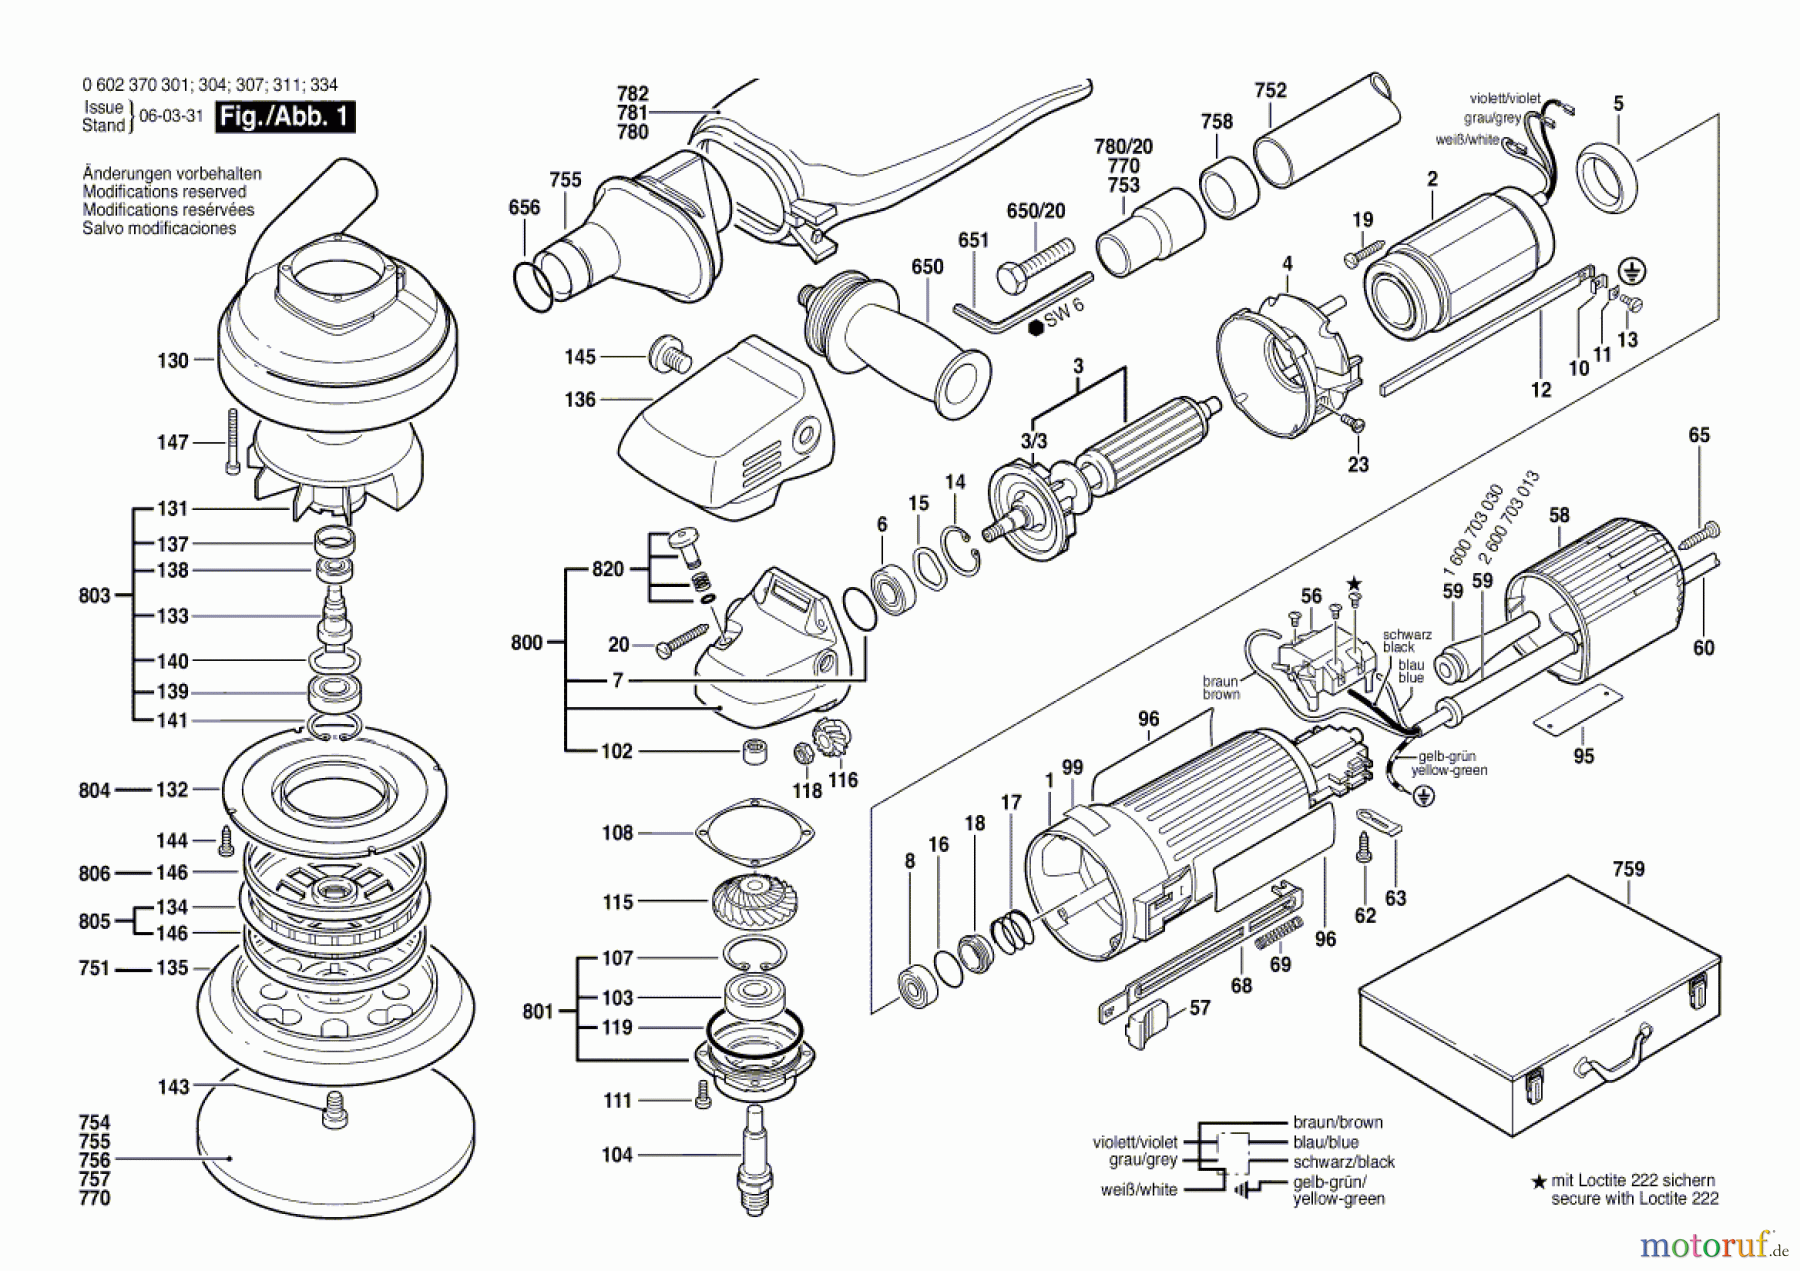  Bosch Werkzeug Exzenterschleifer ---- Seite 1